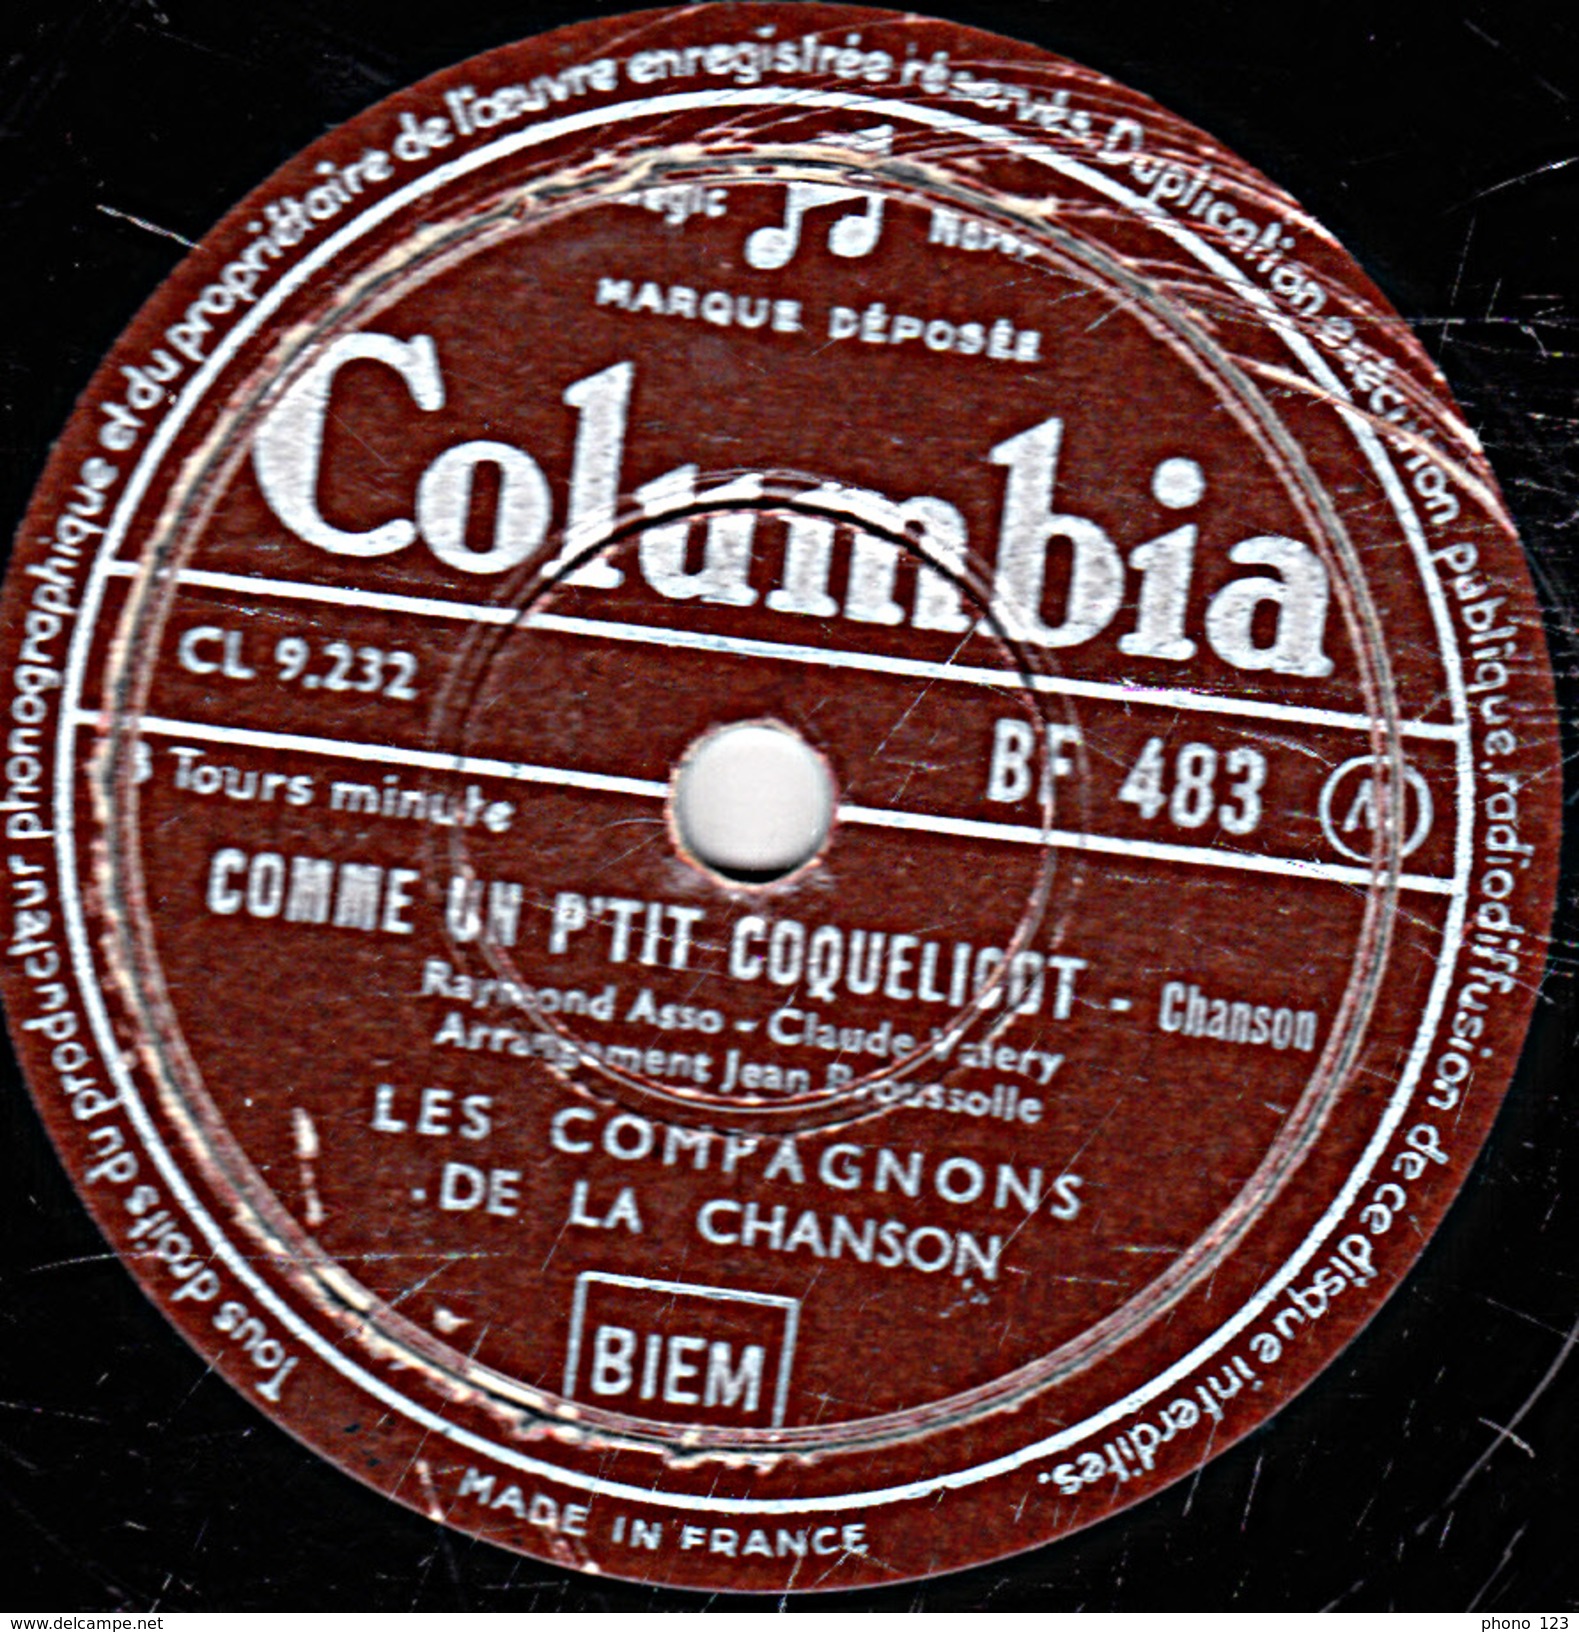 78 T. - 25 Cm - état B - LES COMPAGNONS DE LA CHANSON - COMME UN P'TIT COQUELICOT - UN AMOUR PLEURAIT - 78 T - Disques Pour Gramophone